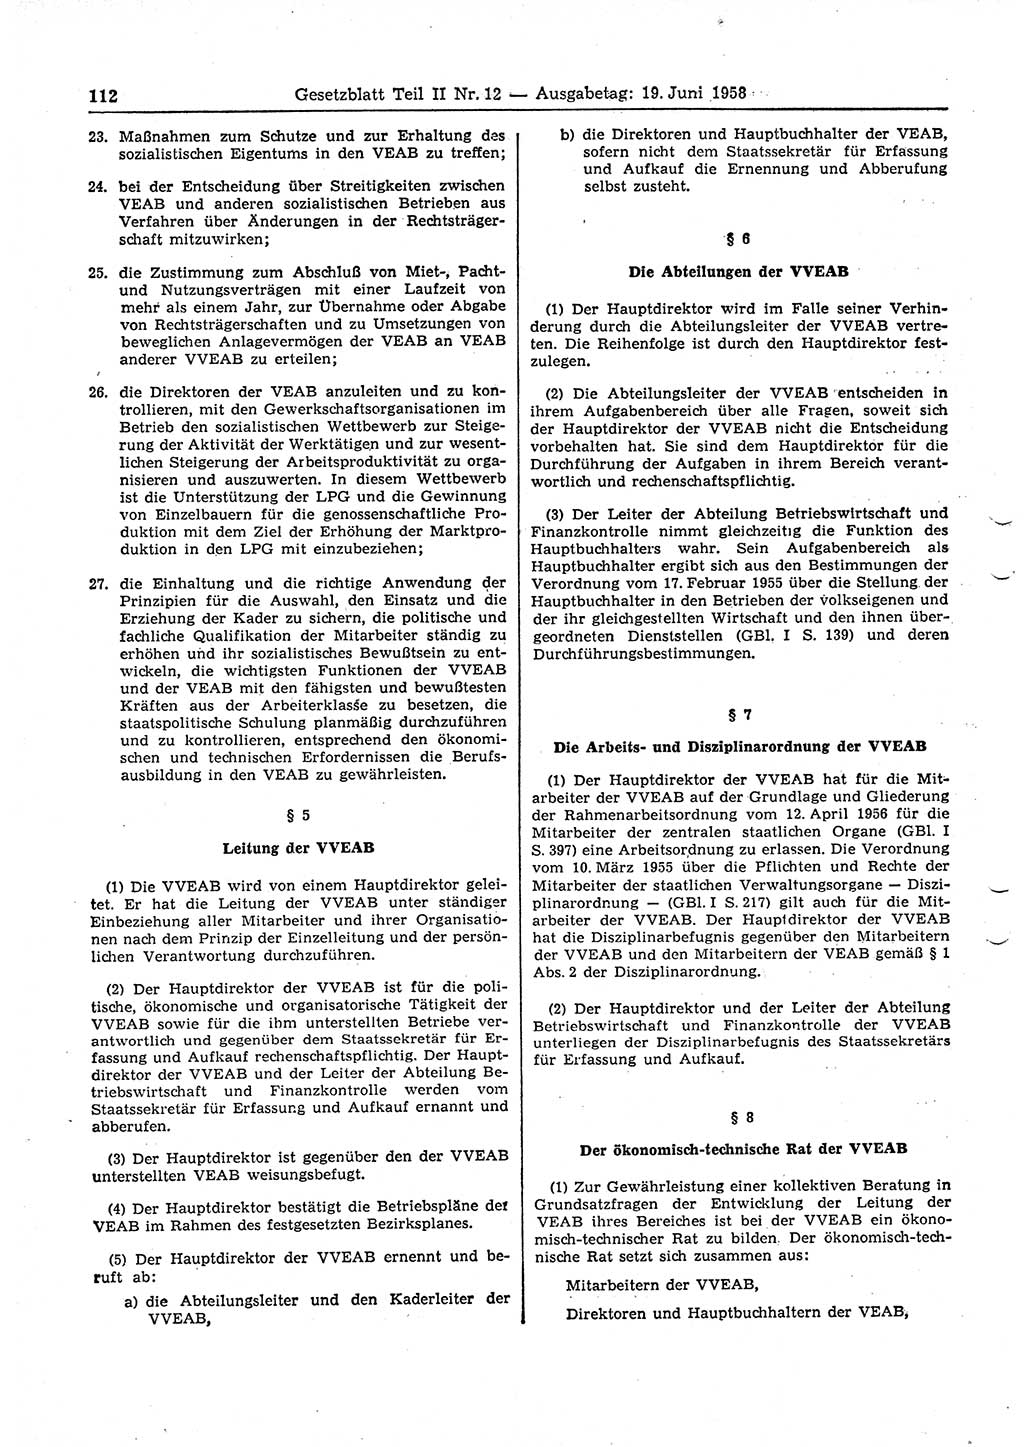 Gesetzblatt (GBl.) der Deutschen Demokratischen Republik (DDR) Teil ⅠⅠ 1958, Seite 112 (GBl. DDR ⅠⅠ 1958, S. 112)